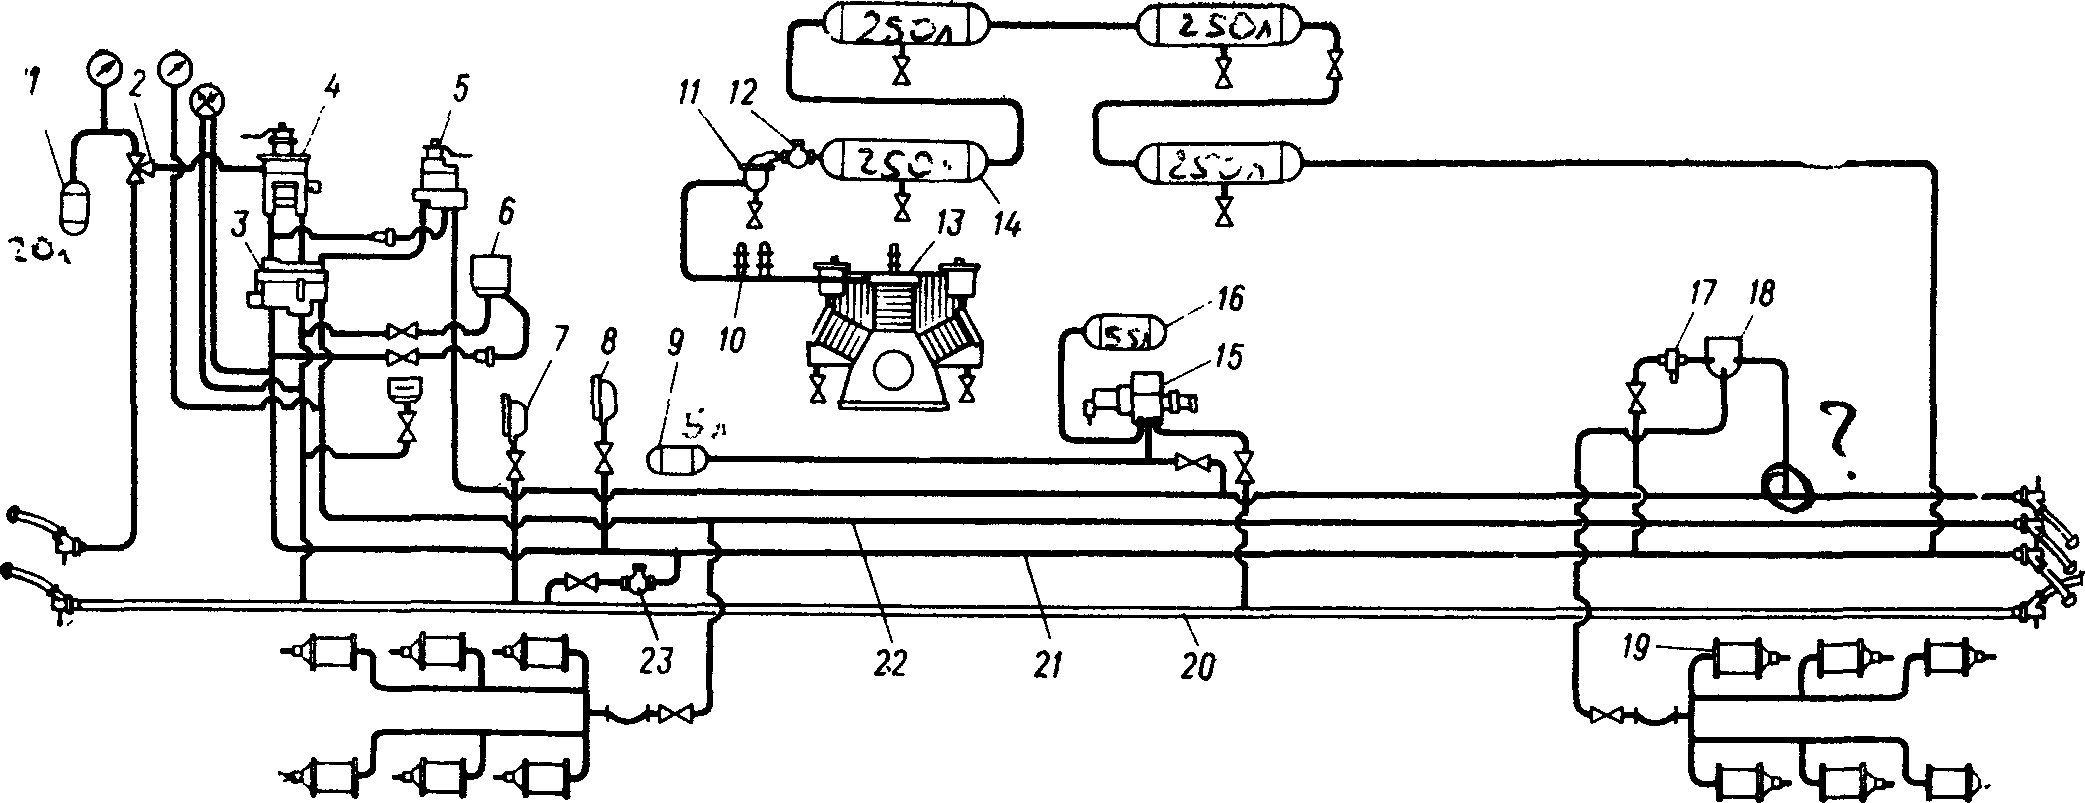 Схема тормозного оборудования тепловоза 2ТЭ116